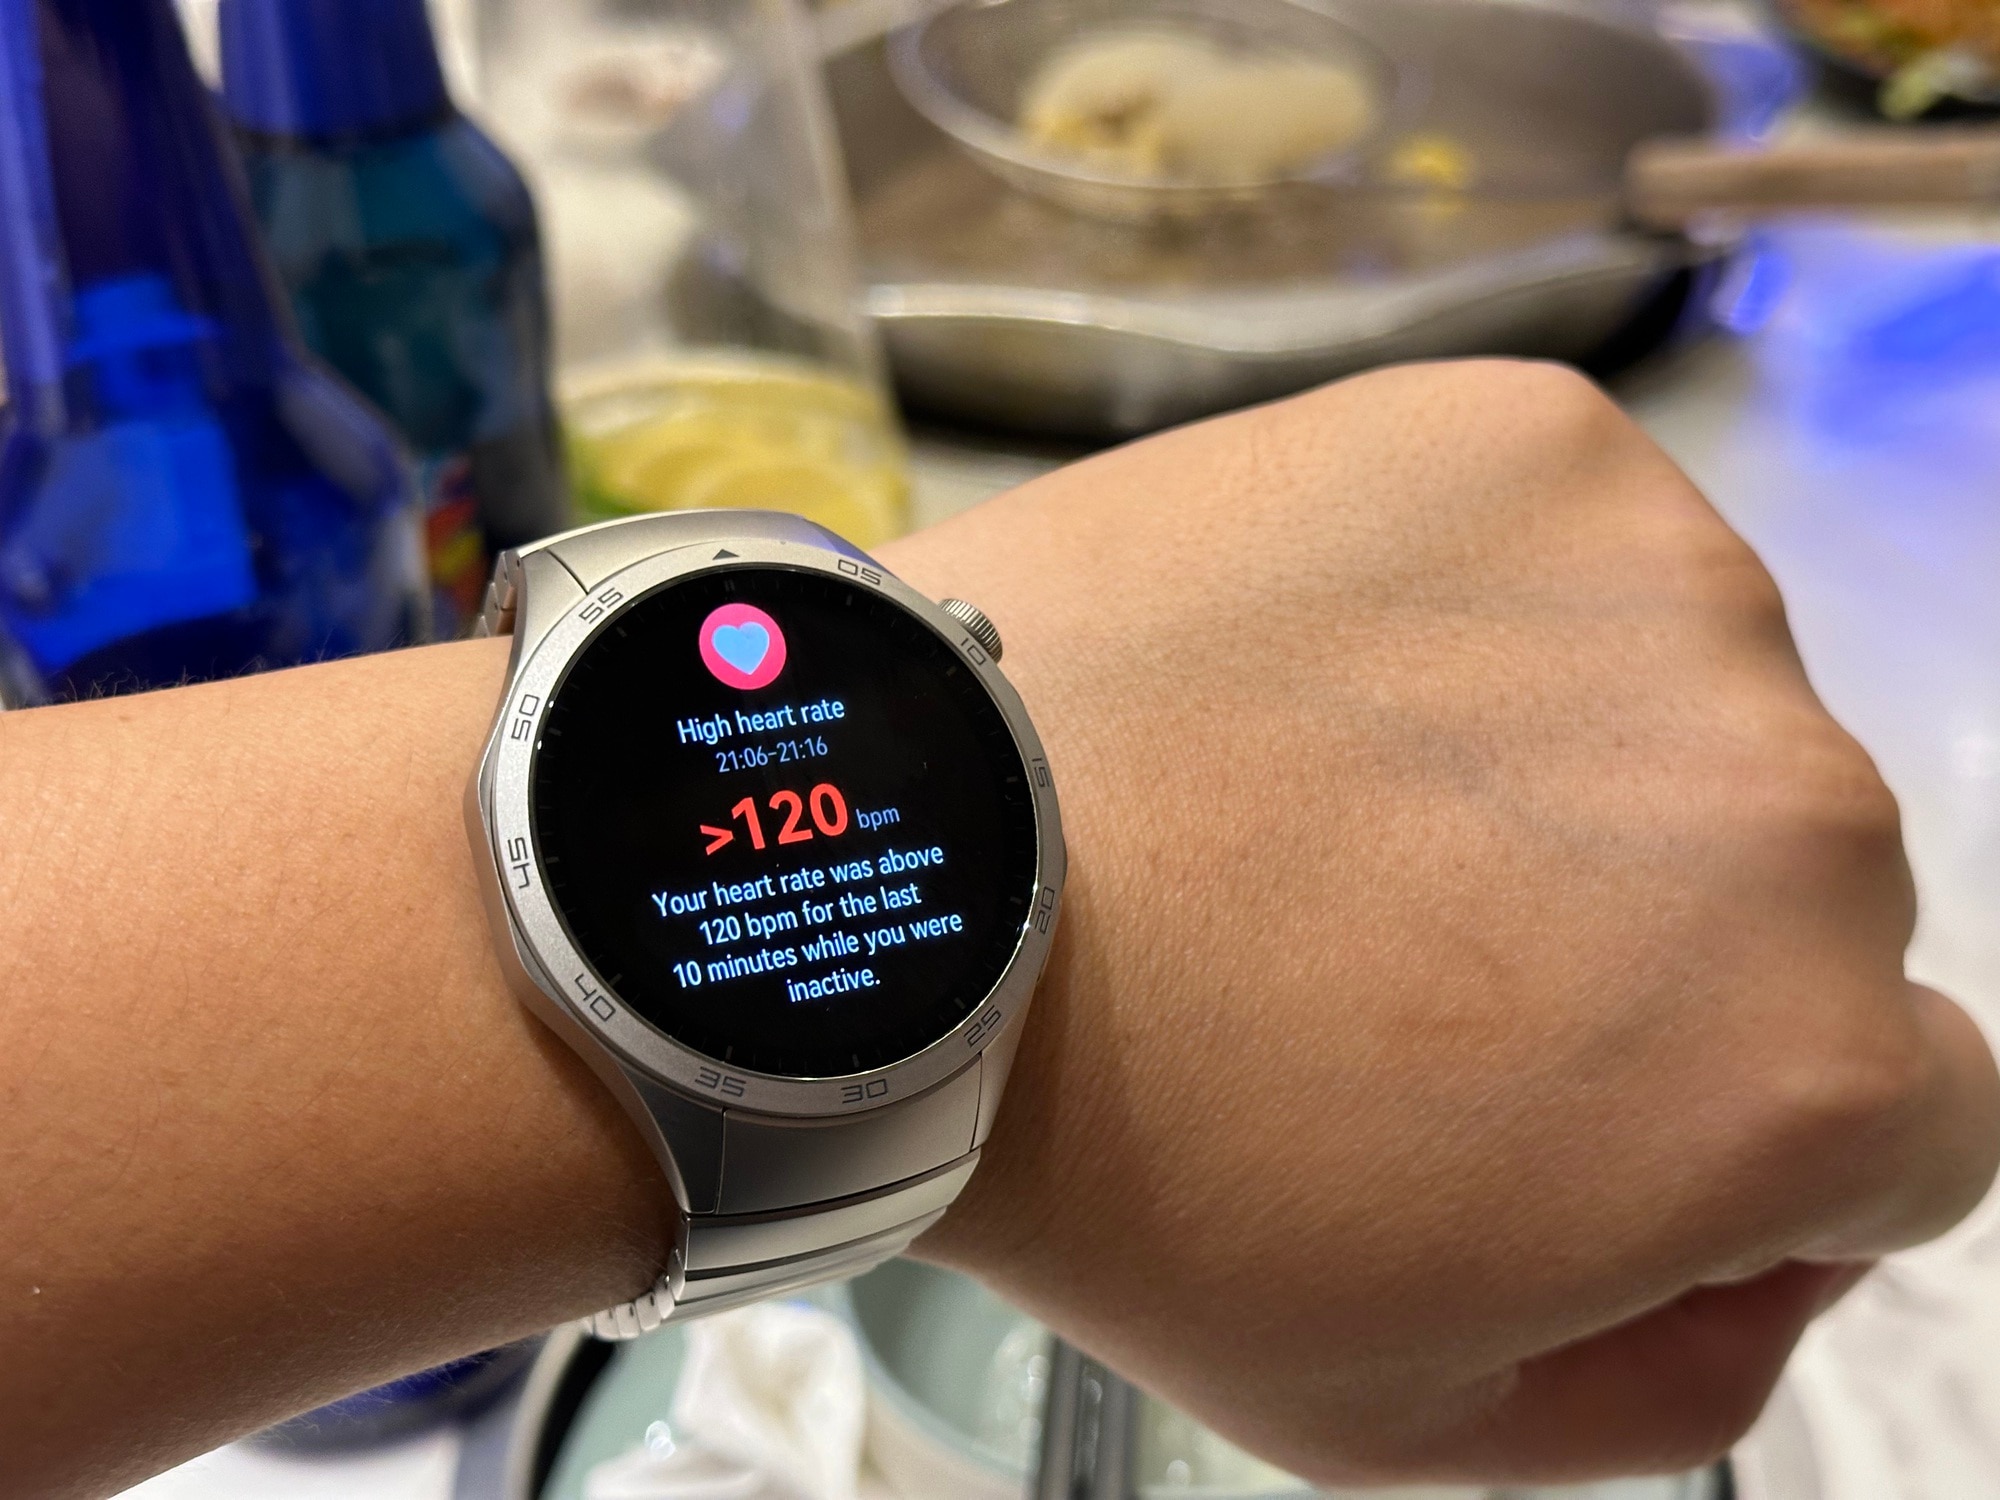 Smartwatch giúp đo lường và cảnh báo sớm các nguy cơ ảnh hưởng đến sức khoẻ người dùng nên ngày càng được ưa chuộng